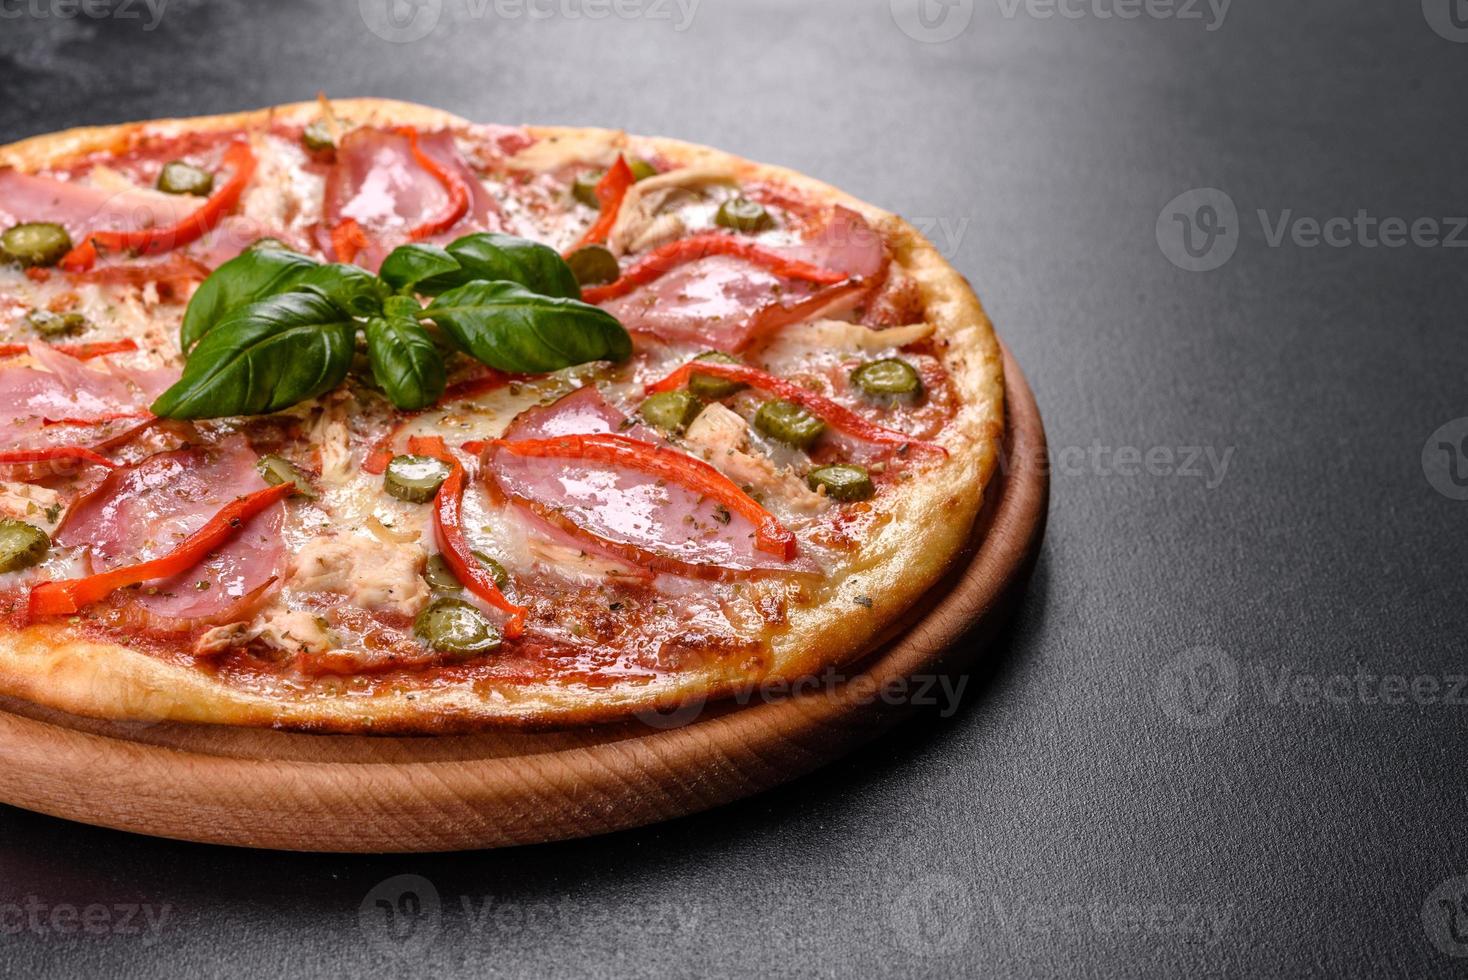 deliciosa pizza crujiente recién horneada con jamón y pimiento búlgaro foto